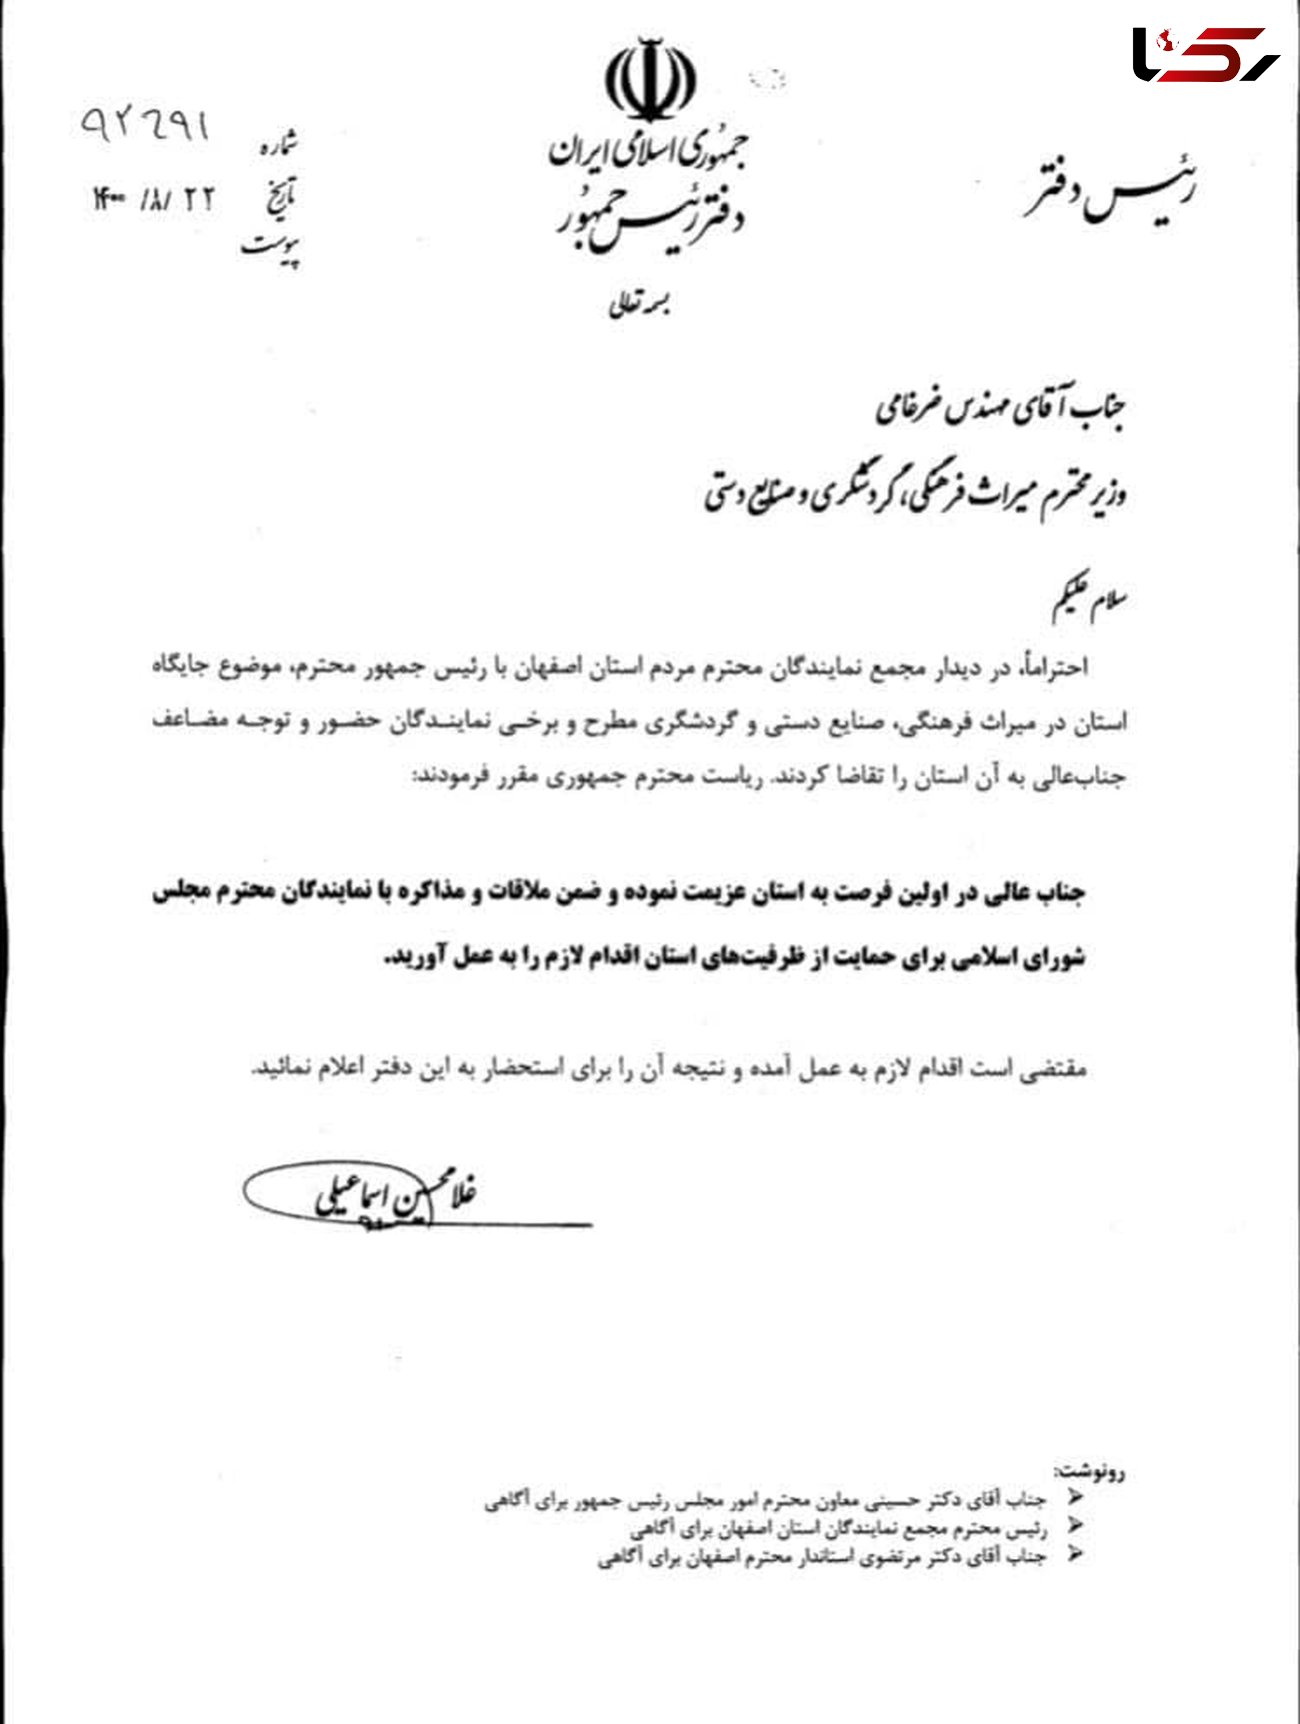  دستور رئیس جمهور به وزیر میراث فرهنگی برای سفر به اصفهان